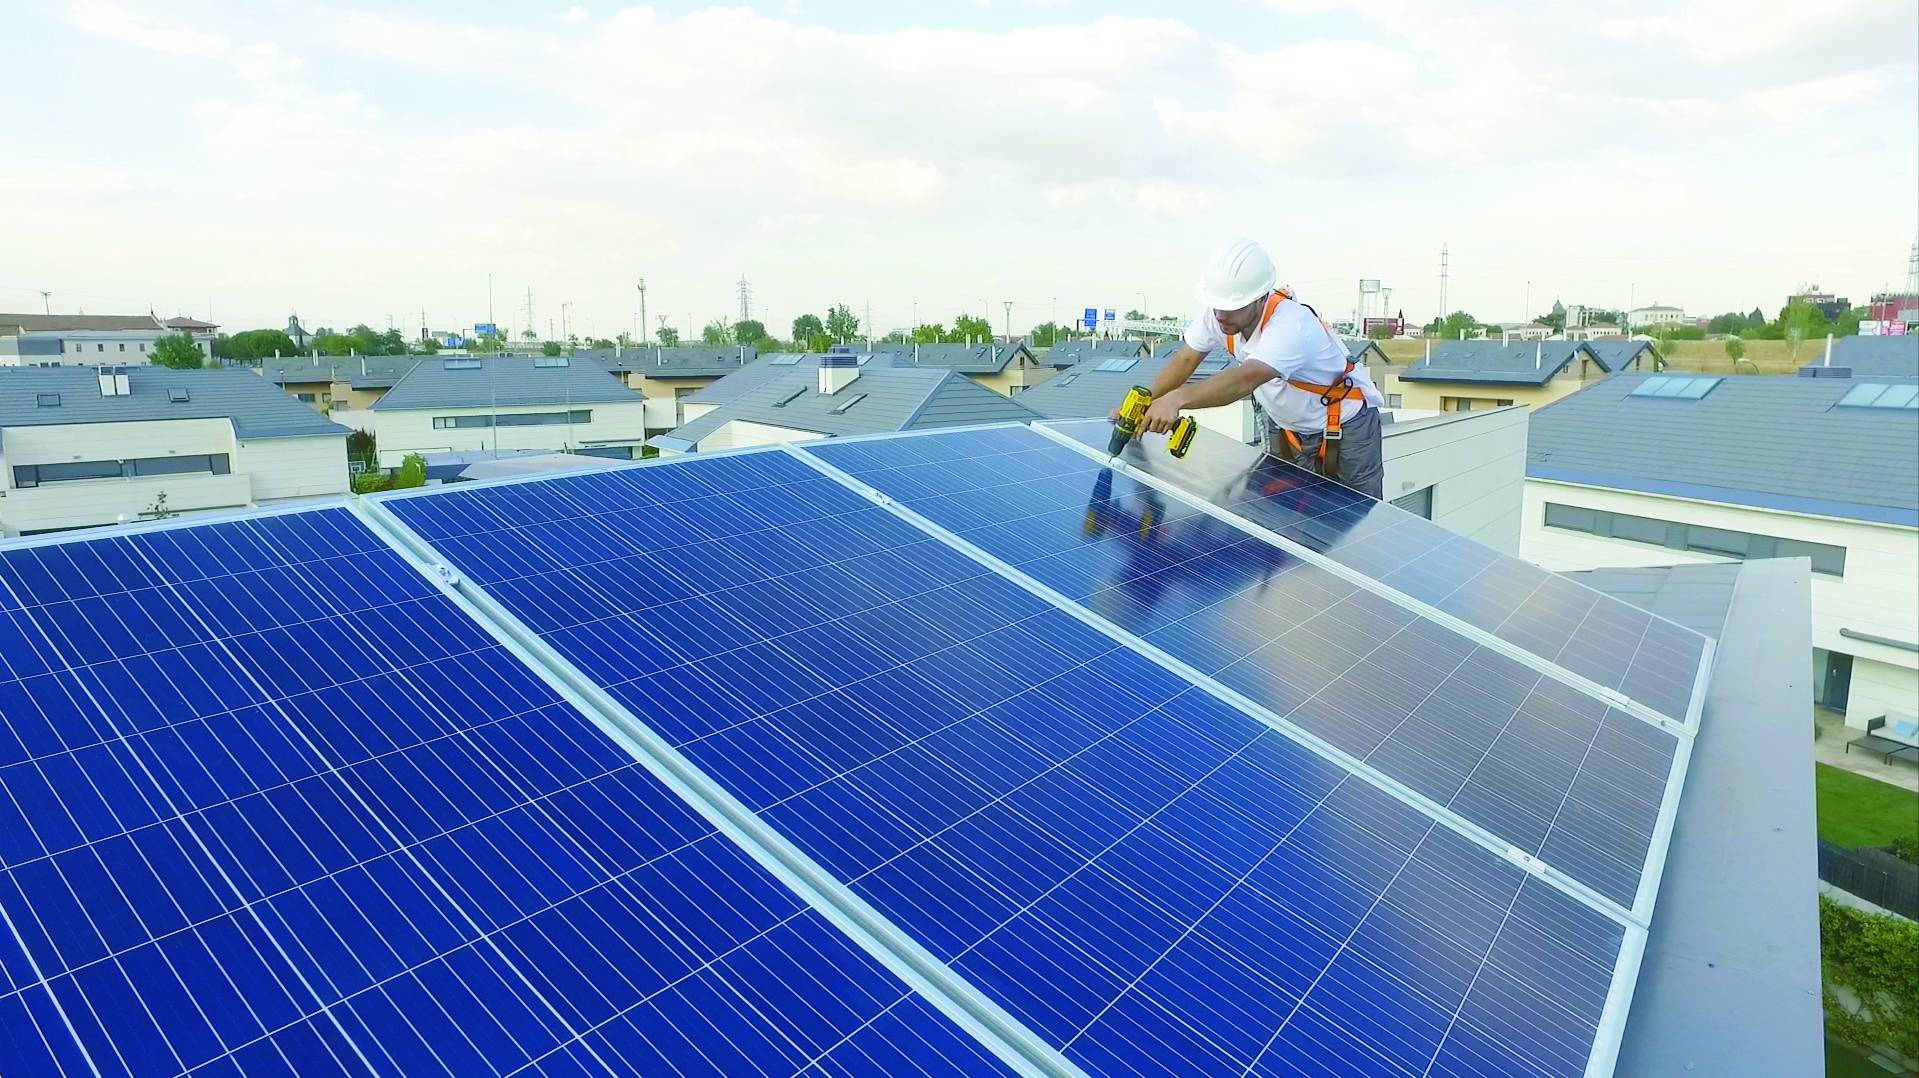 Fece firma un acuerdo con Redexis para comercializar la energía fotovoltaica en viviendas particulares